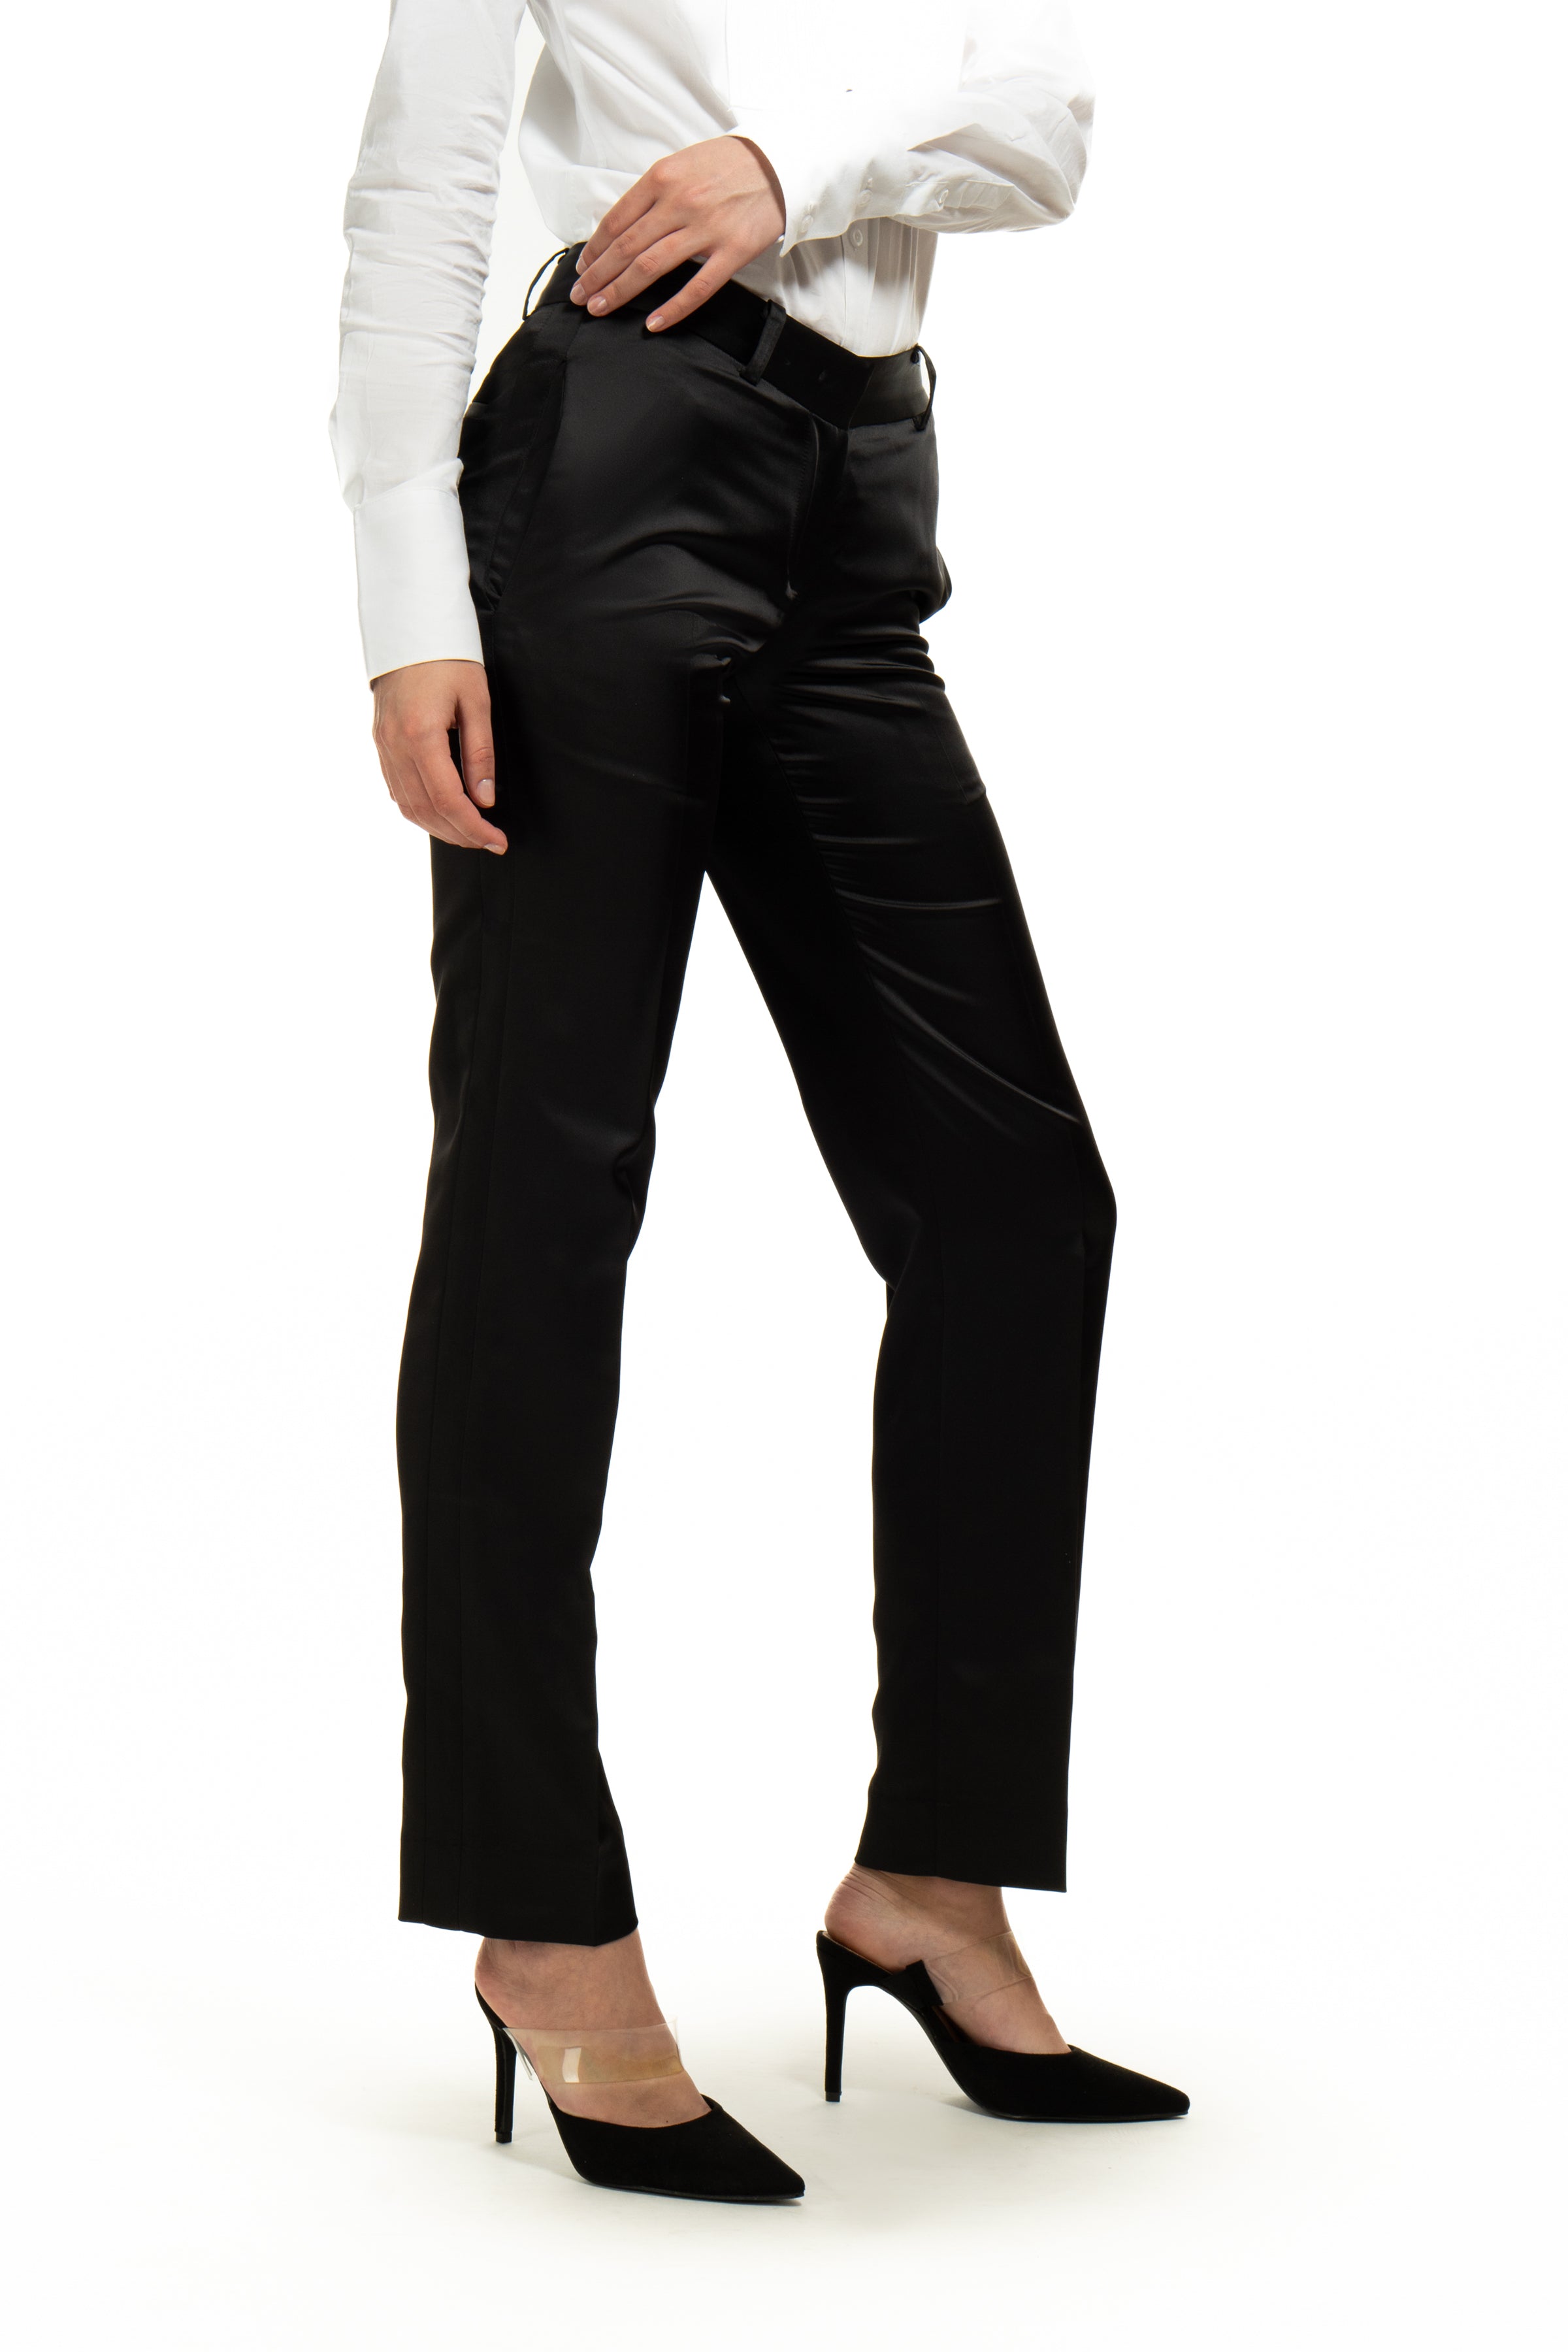 Burgundy Ultra Slim Fit Tuxedo Pants for Women – LITTLE BLACK TUX